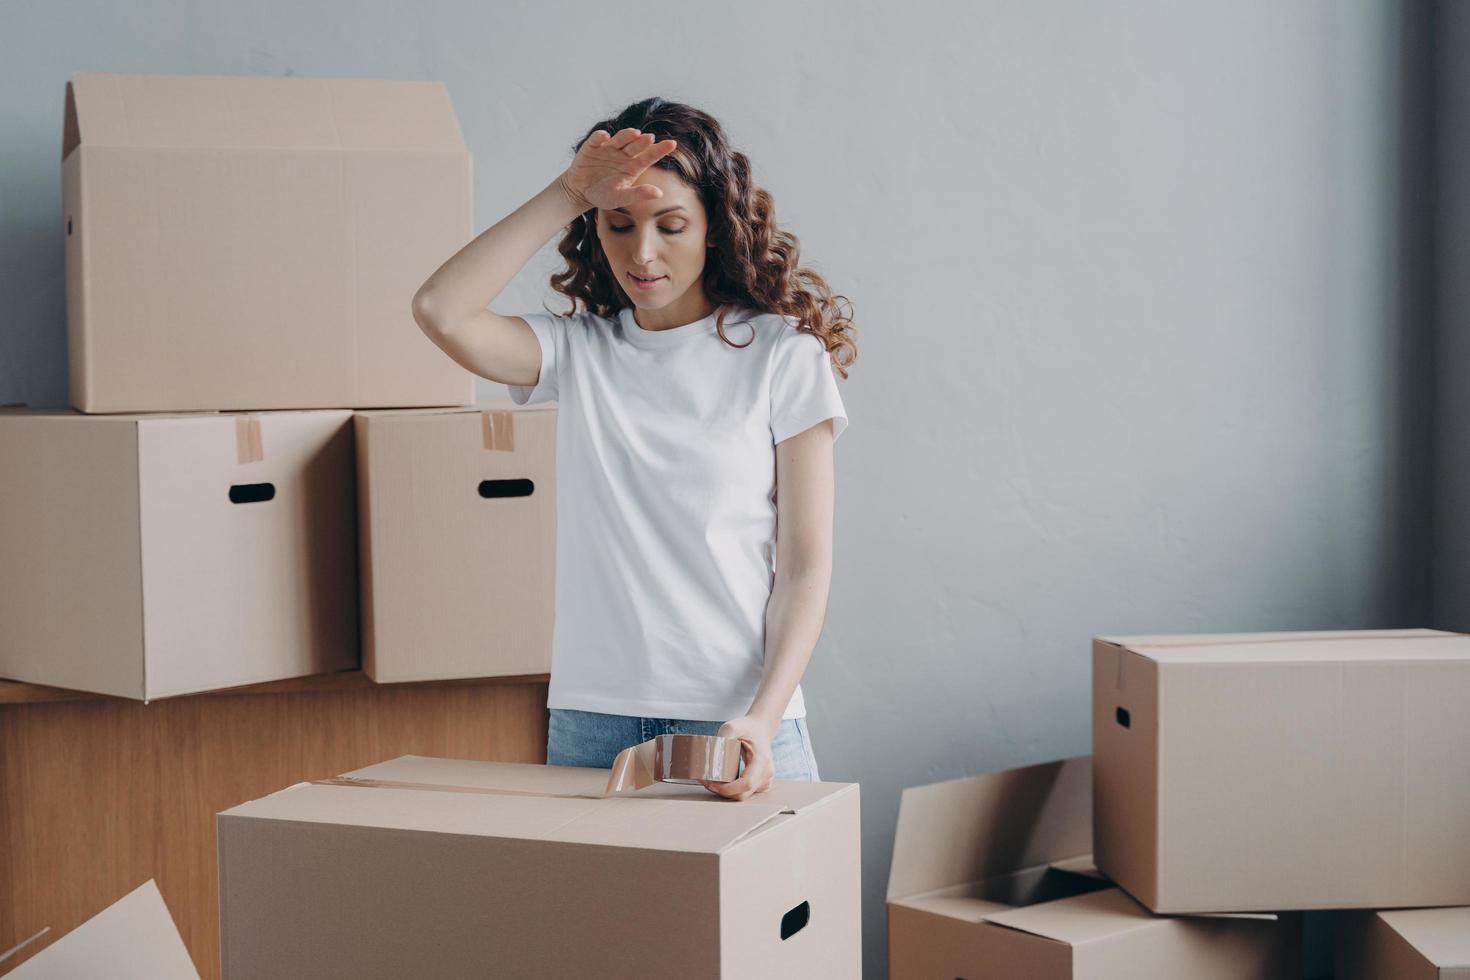 mujer cansada empacando cajas de cartón con cosas, preparándose para mudarse a un nuevo hogar. día de mudanza difícil foto